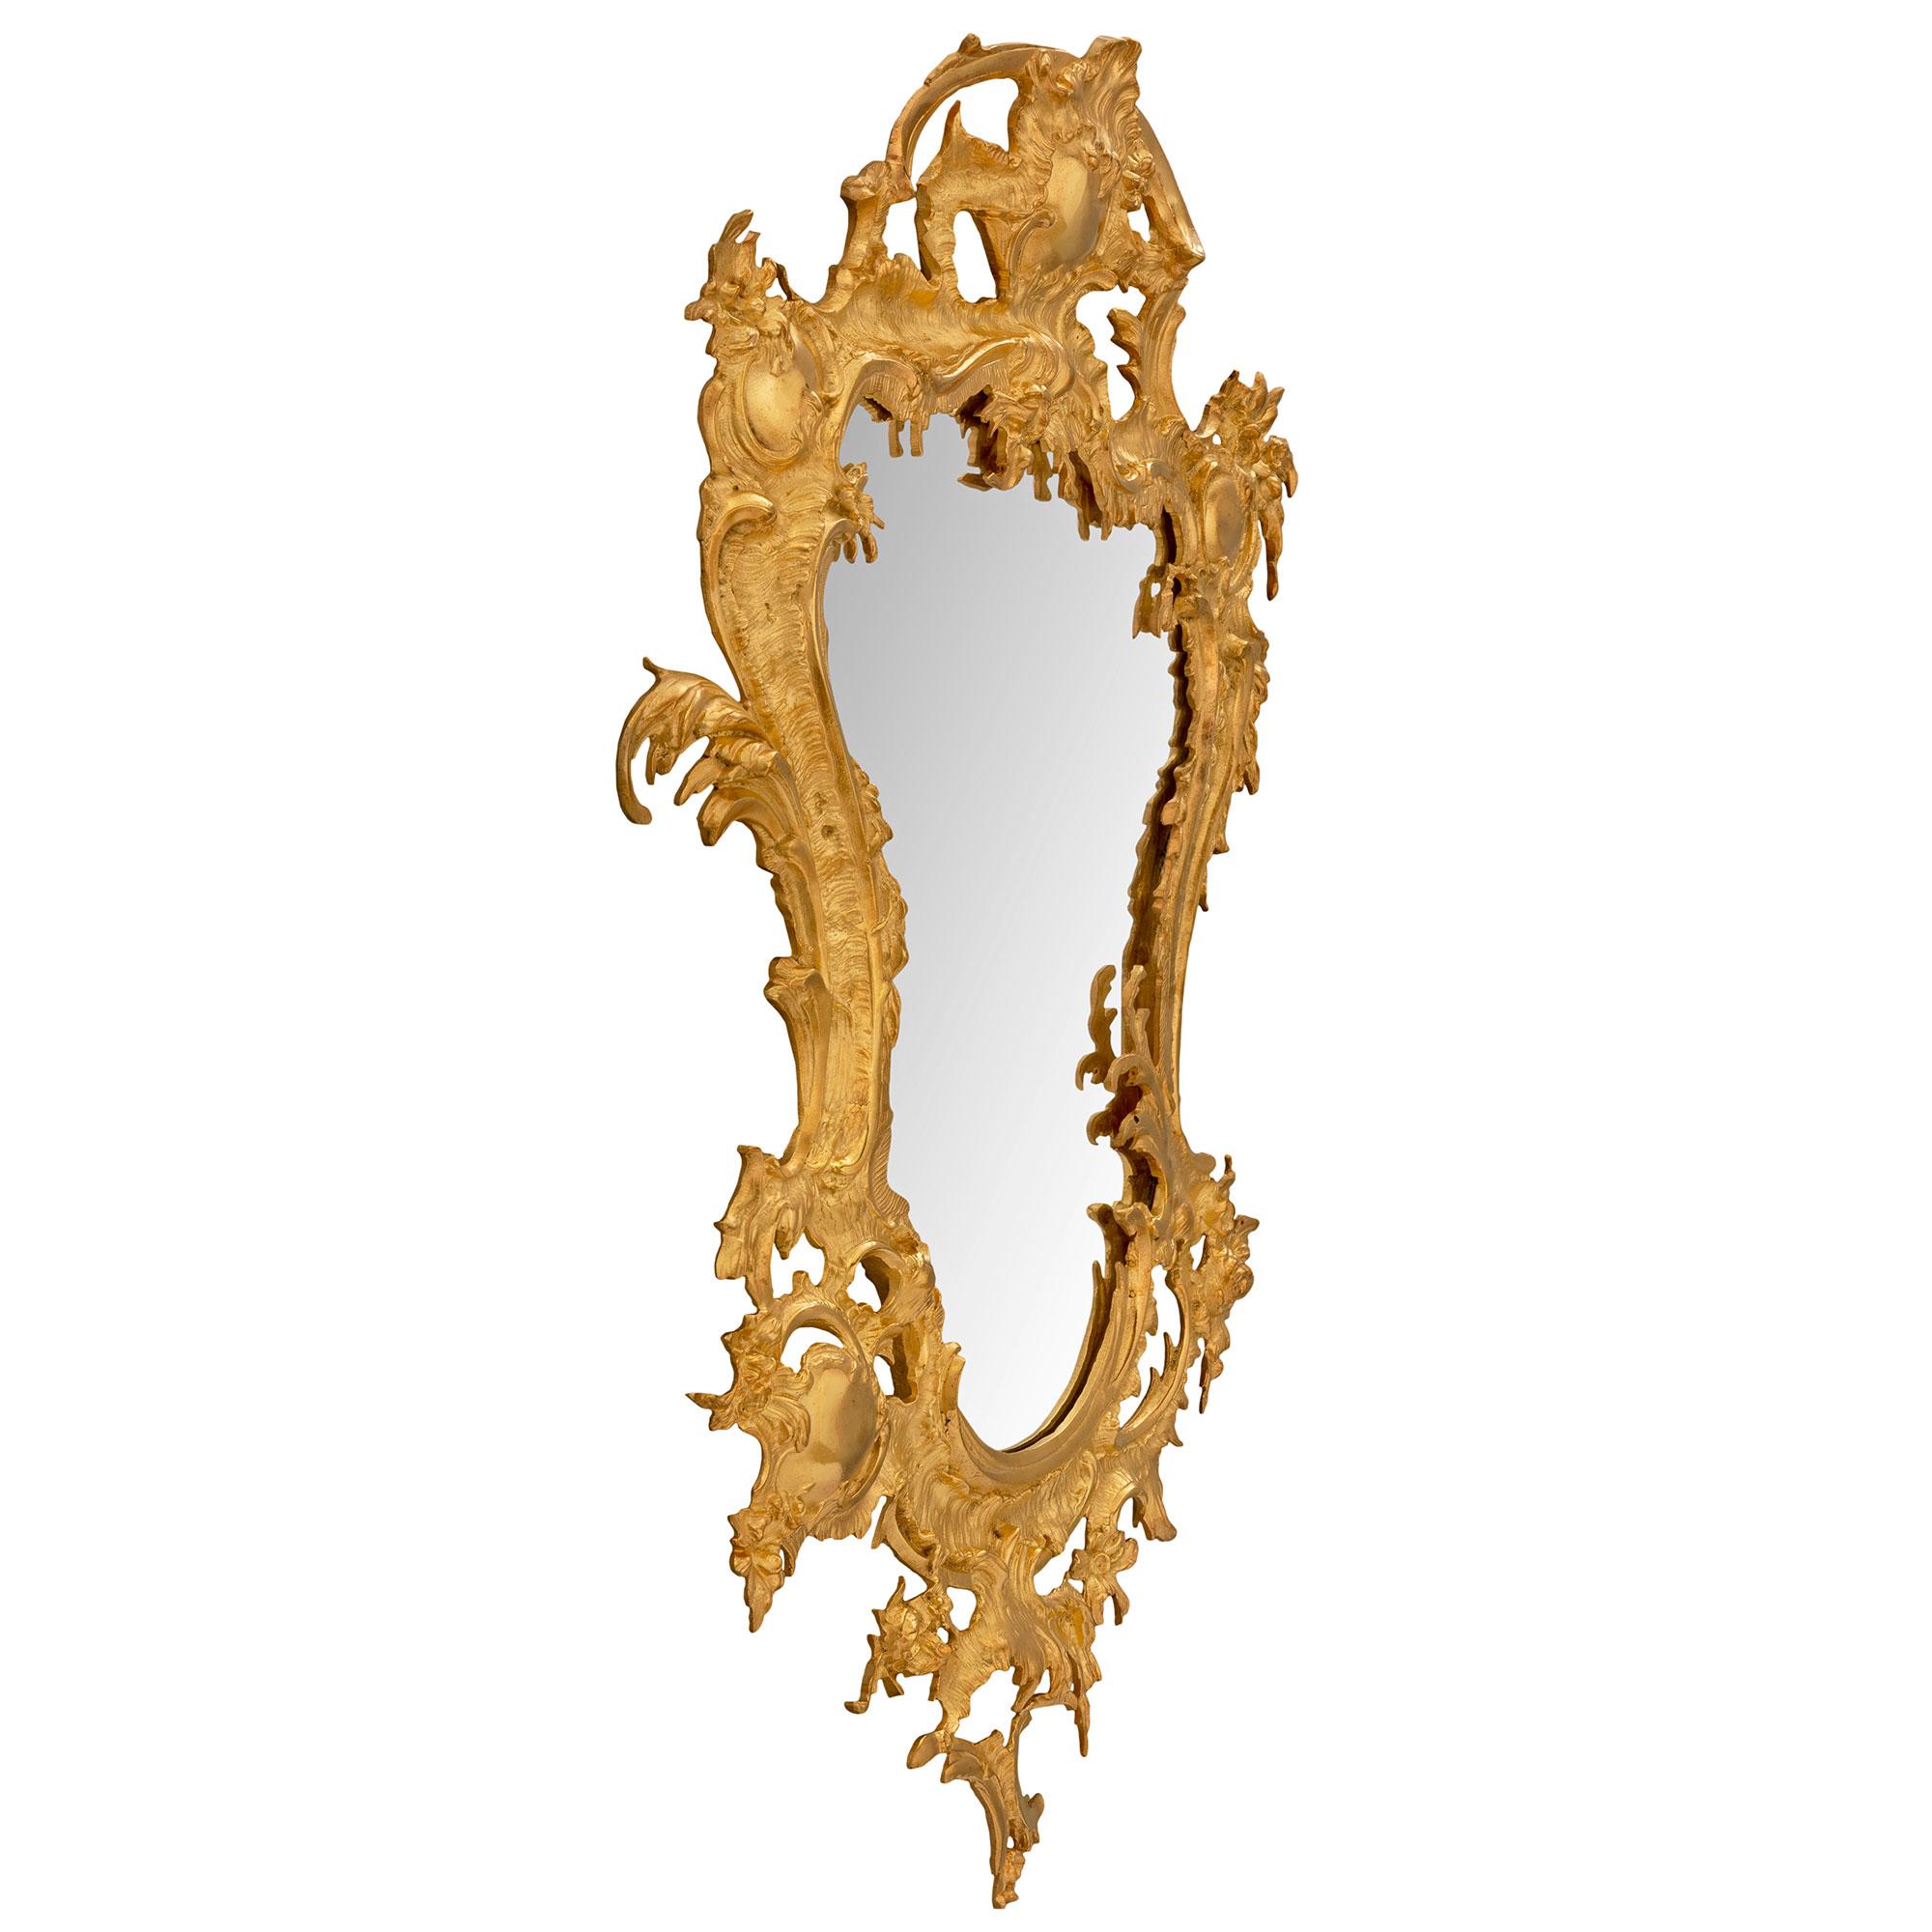 Superbe miroir baroque italien du 19ème siècle en st. ormolu. La plaque de miroir originale présente une merveilleuse forme festonnée encadrée par une magnifique bordure en bronze doré percée, merveilleusement exécutée, avec de saisissants motifs